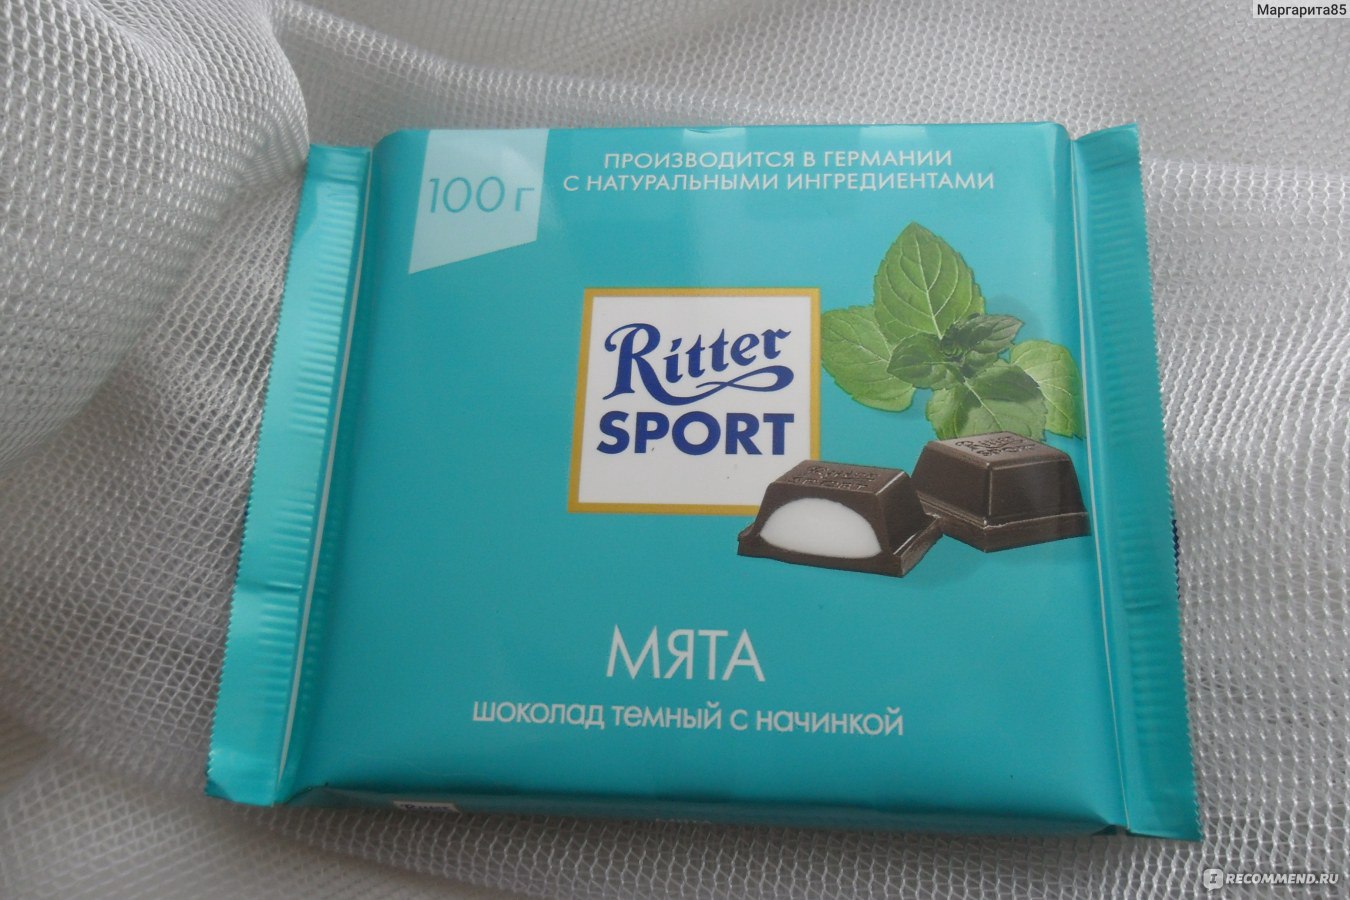 Мятный шоколад Риттер спорт